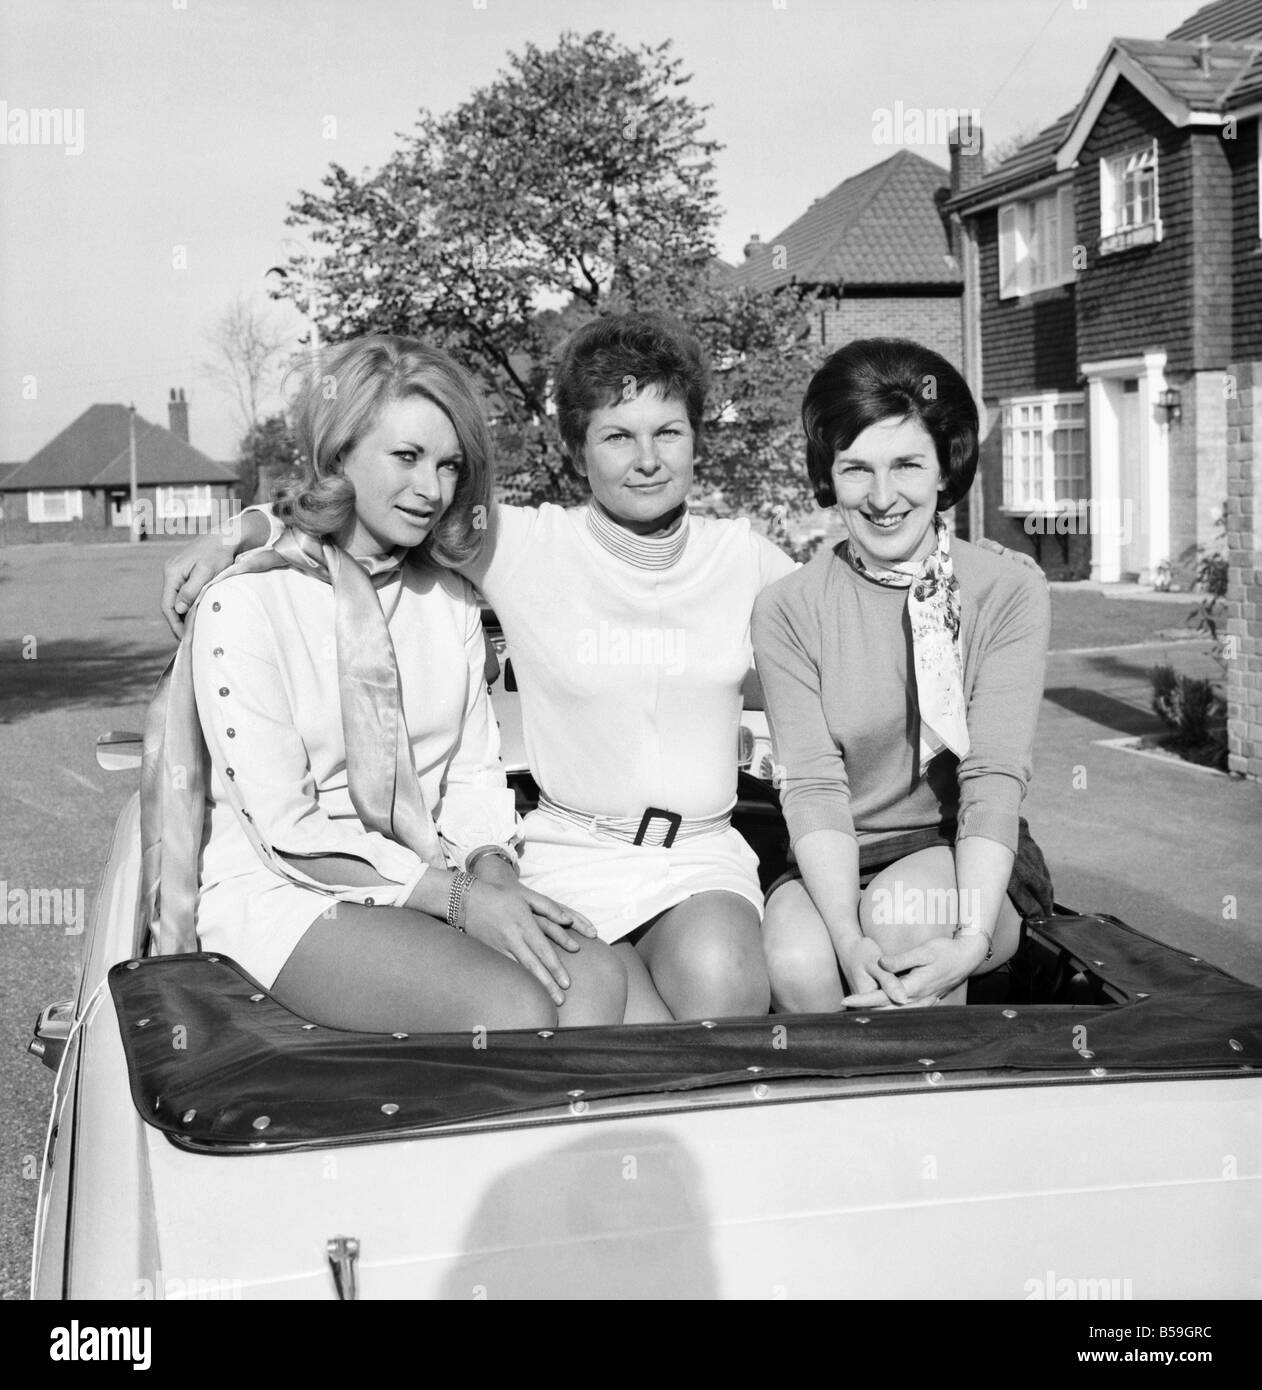 People : femme : deux femmes au foyer de banlieue de Surrey, Peggy Preston, 35 et Vicky Courtney, 39 avec Vicky's, 21 ans fille Sharyn, sont entrés dans le Daily Mirror World Cup Rally dans l'opération "She-Car'. Octobre 1969 Z10421 Banque D'Images